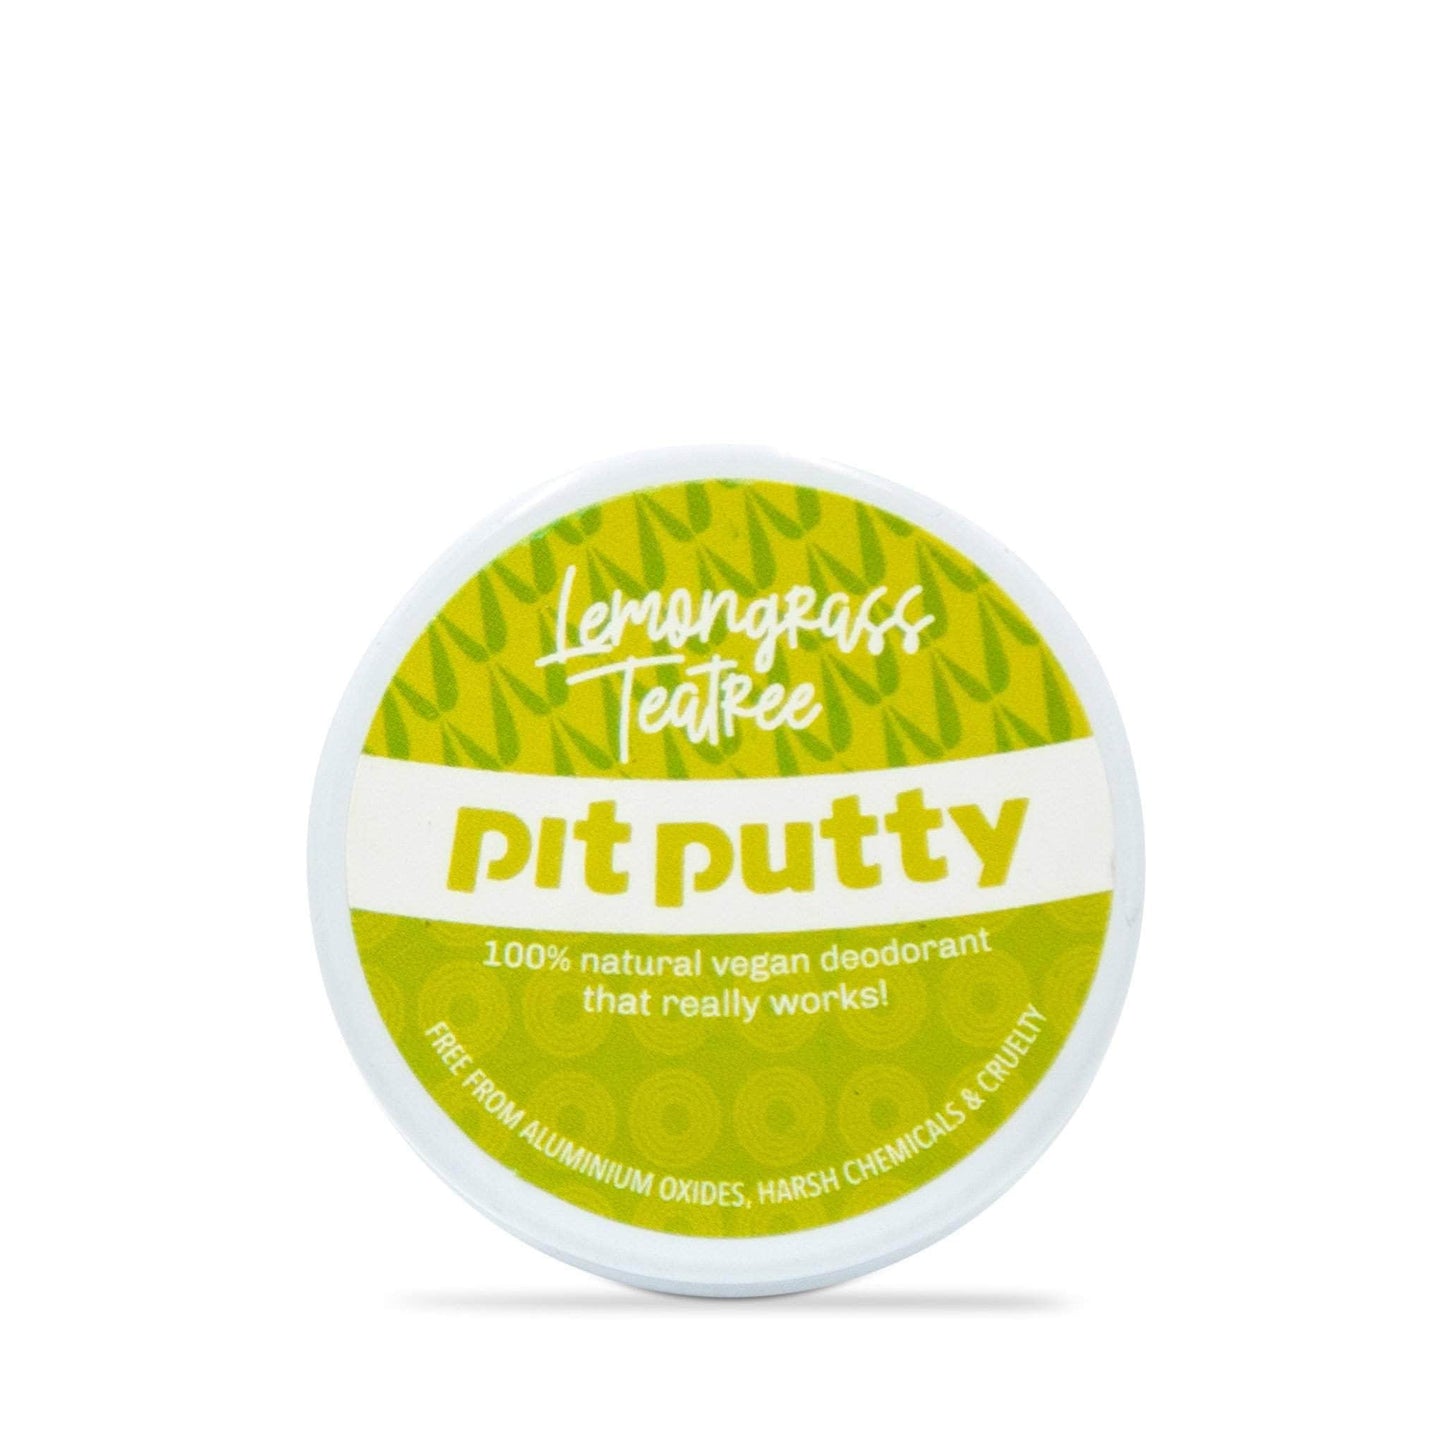 Pit Putty Deodorant Pit Putty Deodorant - Lemongrass & Tea Tree - Tester Mini 15gm